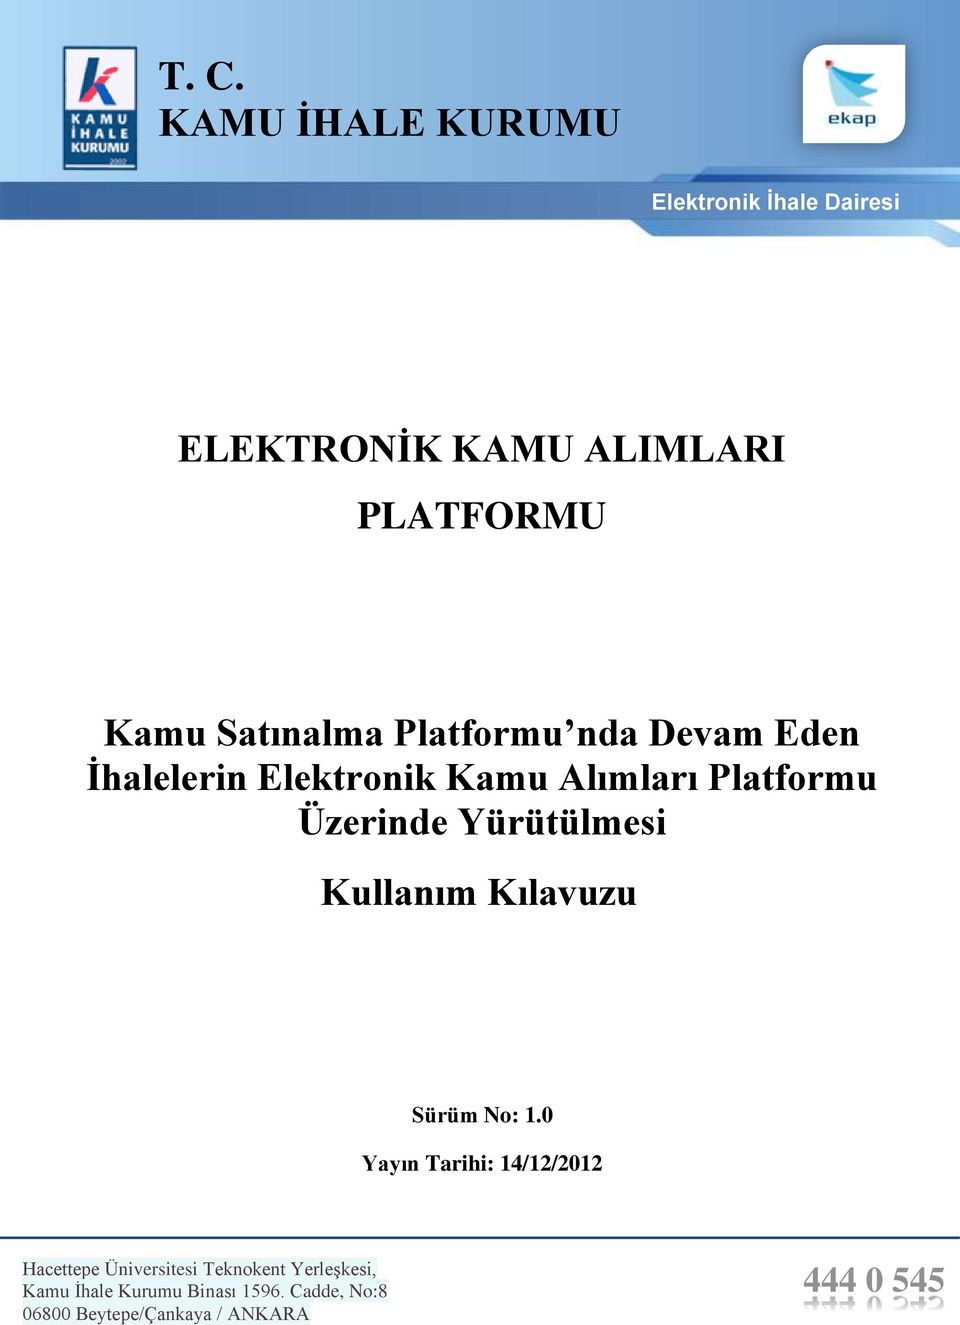 Elektronik Kamu Alımları Platformu Üzerinde Yürütülmesi KAP Kullanım